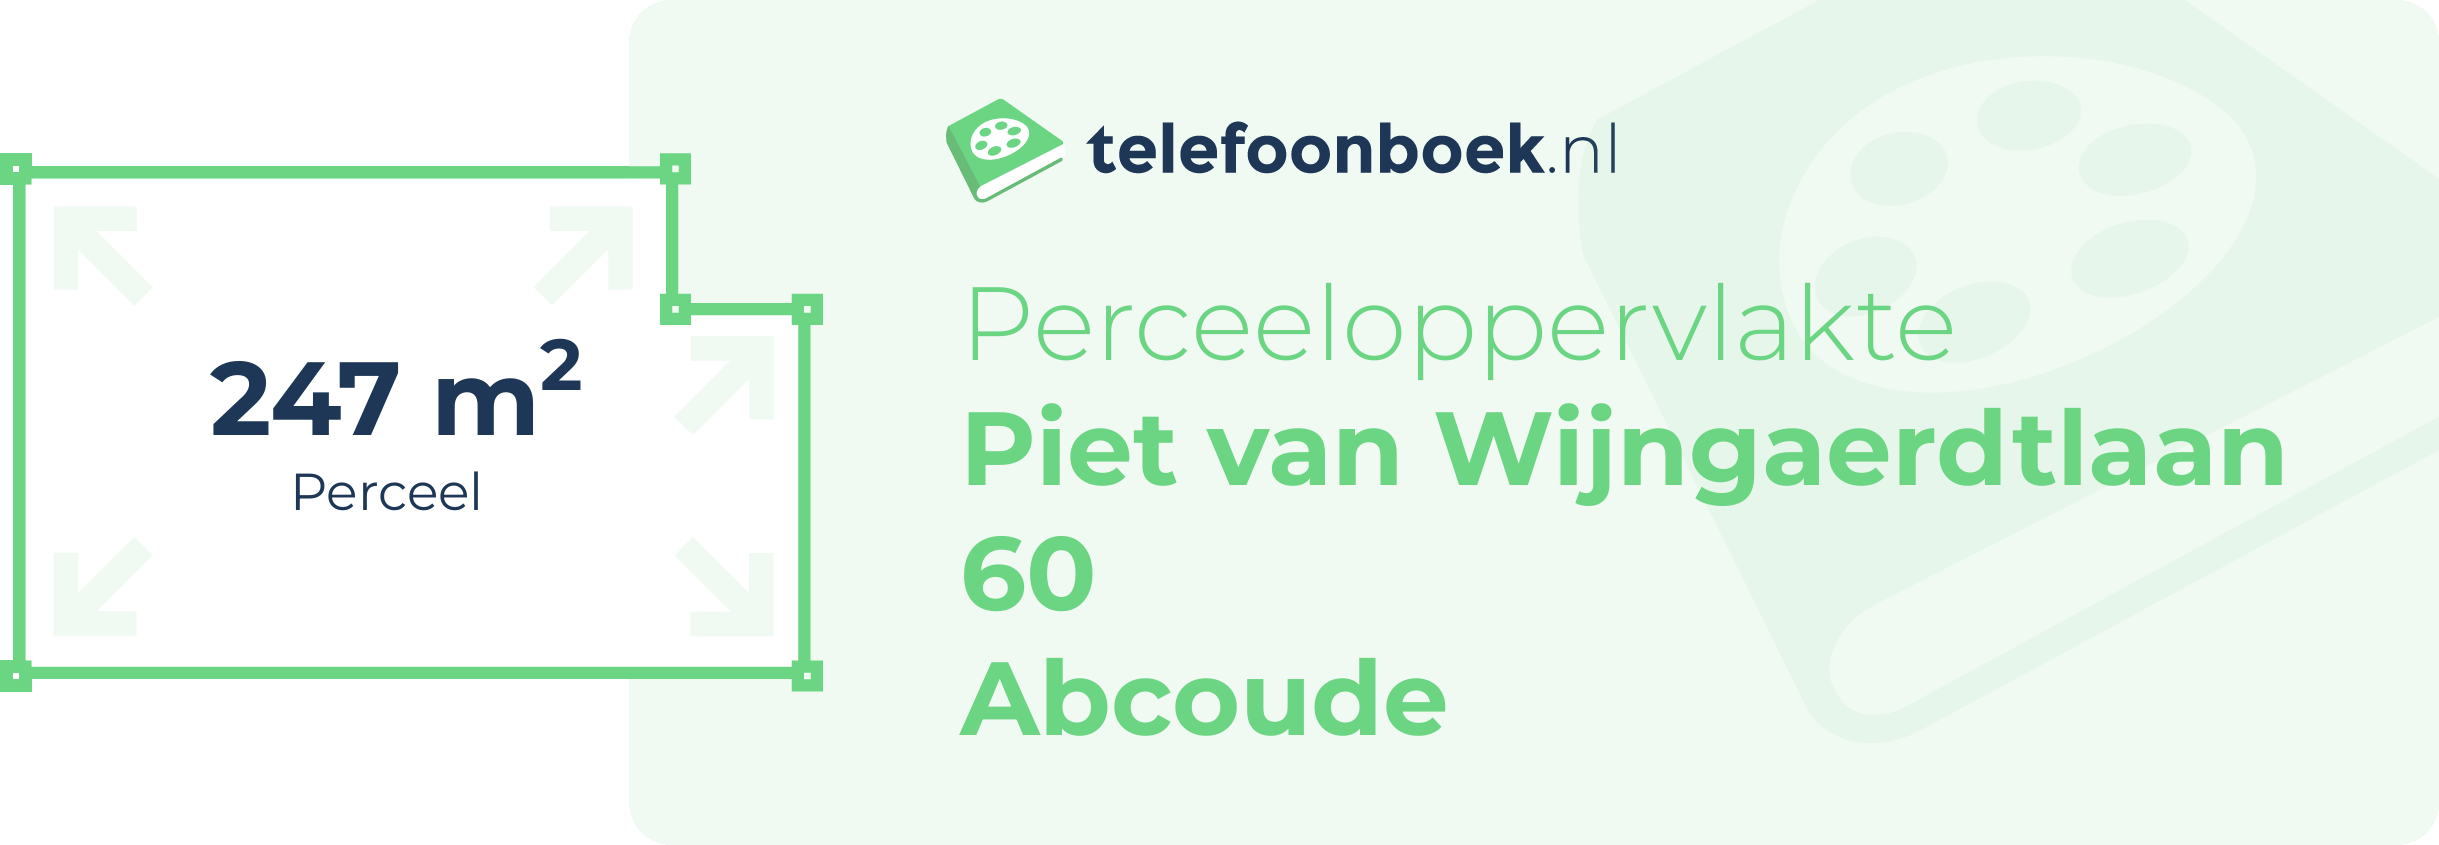 Perceeloppervlakte Piet Van Wijngaerdtlaan 60 Abcoude